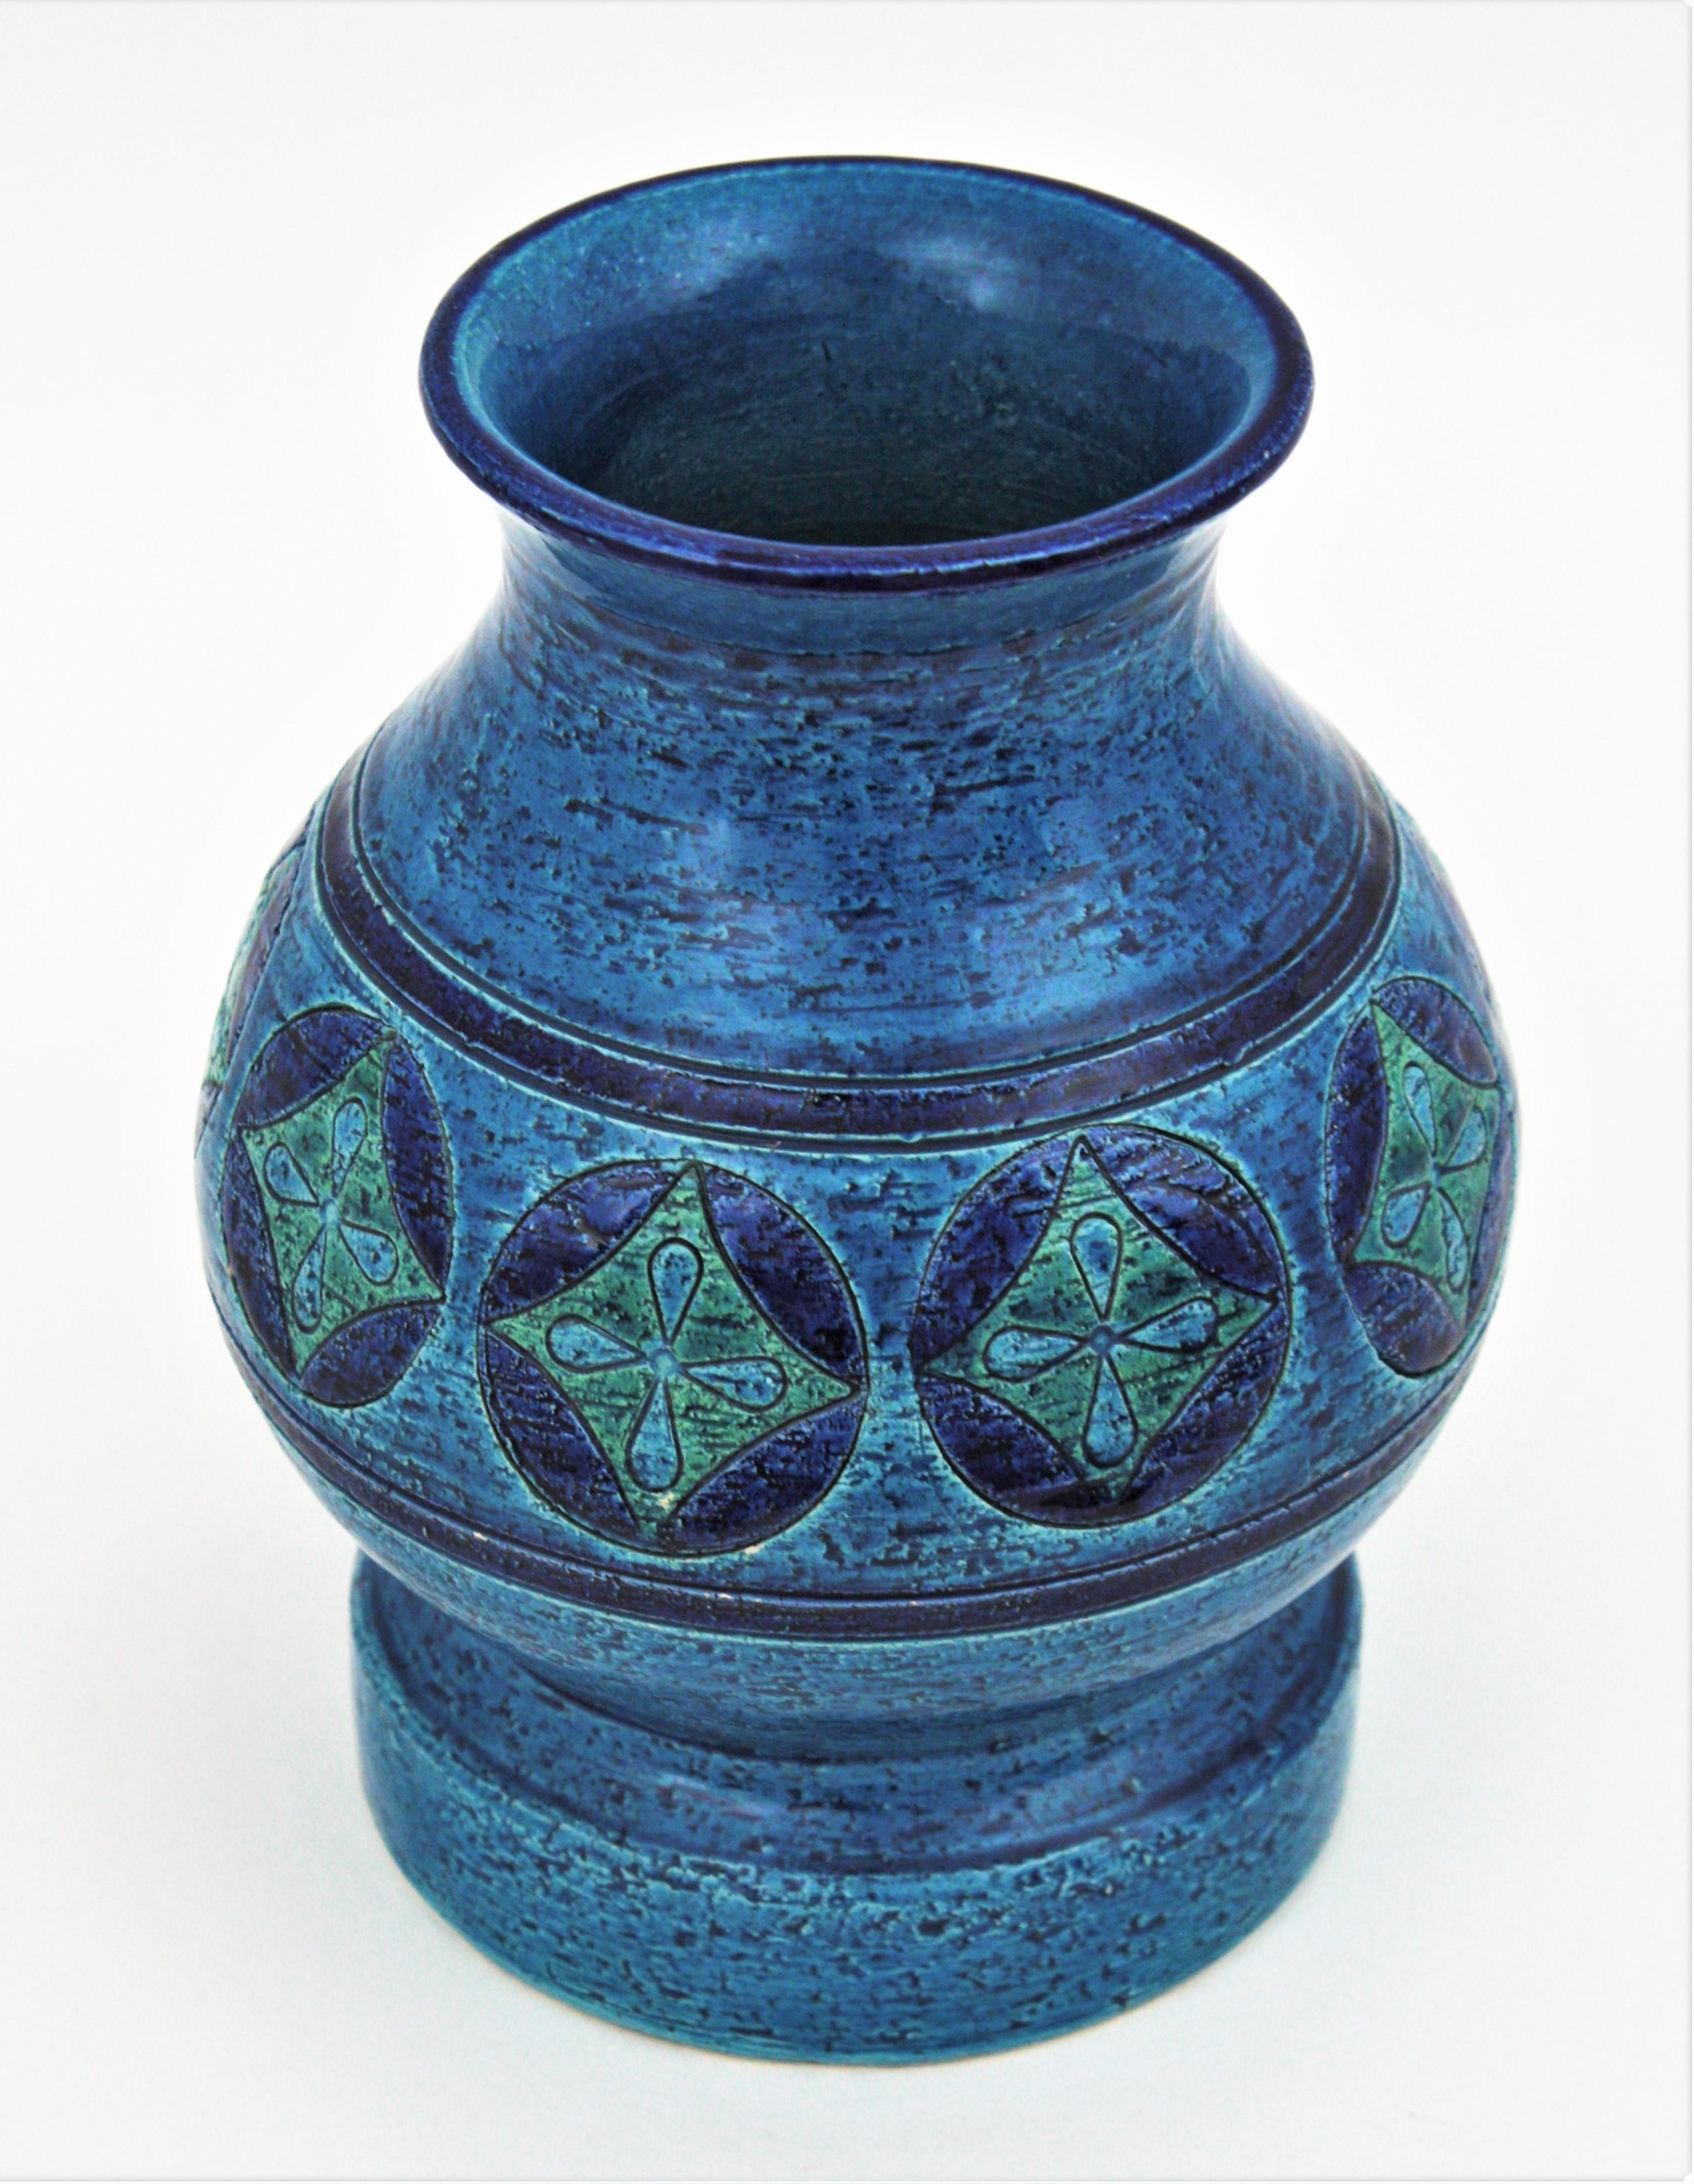 Bitossi Aldo Londi Rimini Blu Ceramic Vase, Italy, 1960s For Sale 3